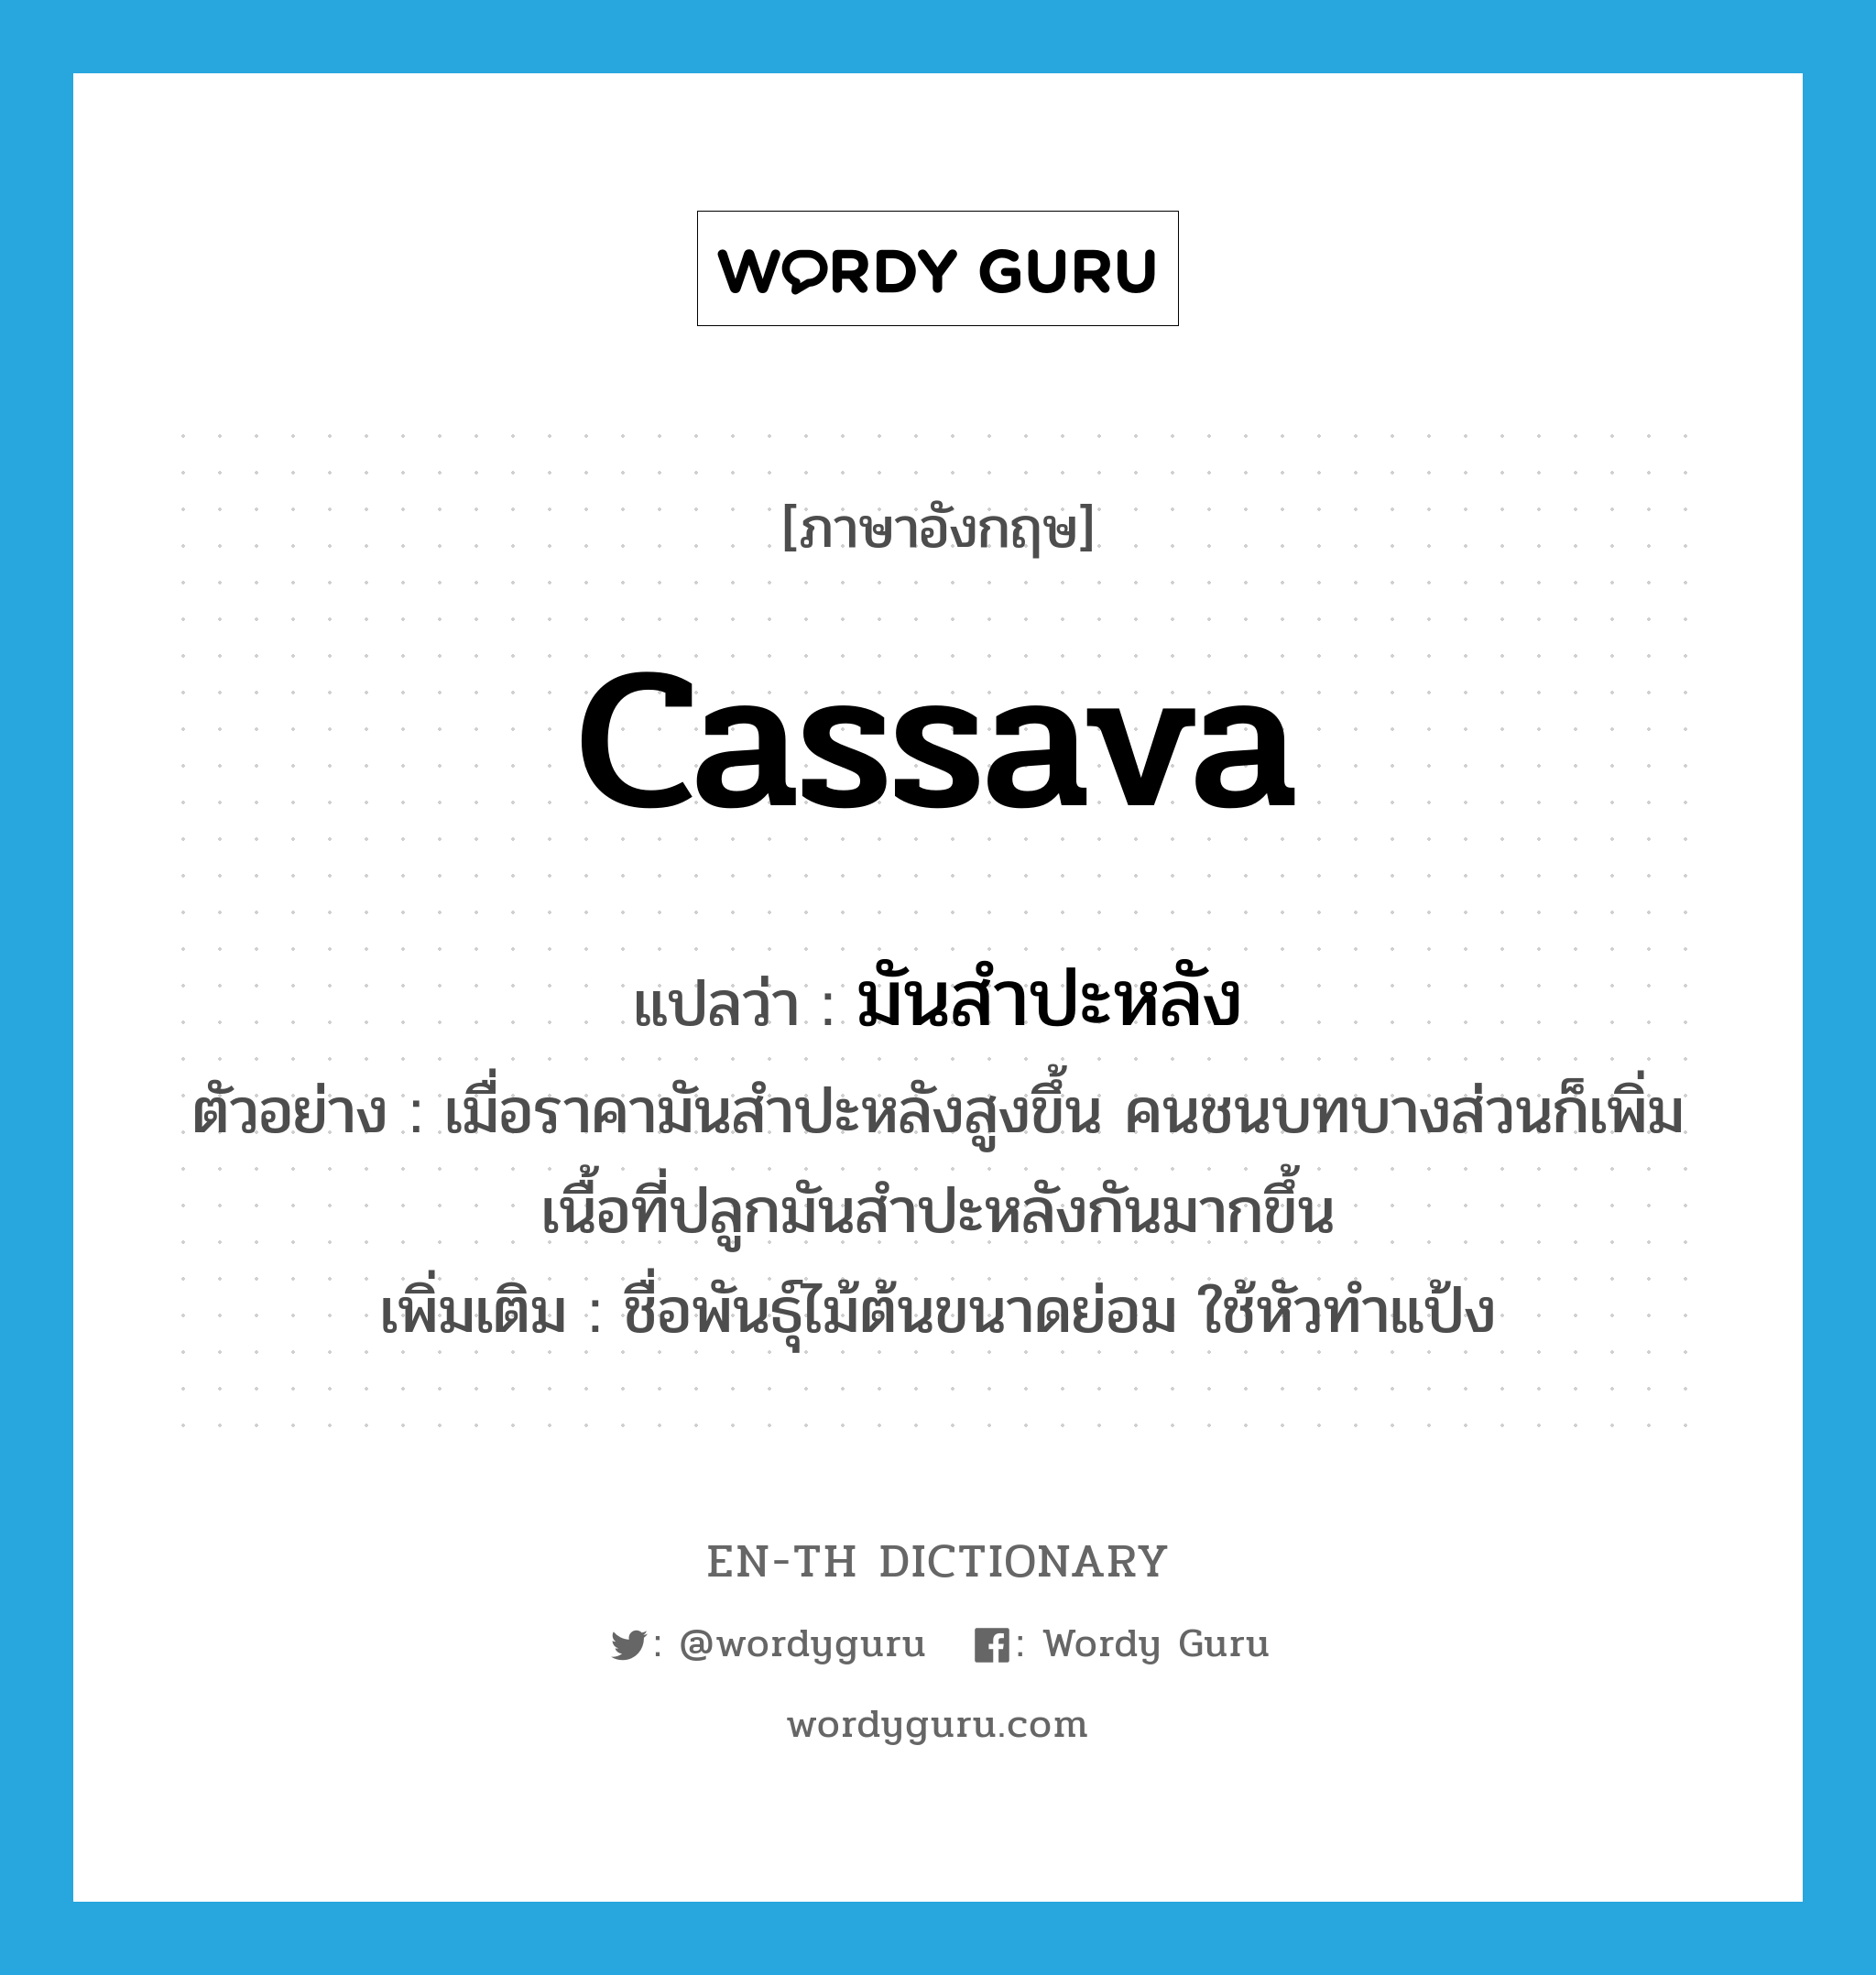 cassava แปลว่า?, คำศัพท์ภาษาอังกฤษ cassava แปลว่า มันสำปะหลัง ประเภท N ตัวอย่าง เมื่อราคามันสำปะหลังสูงขึ้น คนชนบทบางส่วนก็เพิ่มเนื้อที่ปลูกมันสำปะหลังกันมากขึ้น เพิ่มเติม ชื่อพันธุ์ไม้ต้นขนาดย่อม ใช้หัวทำแป้ง หมวด N